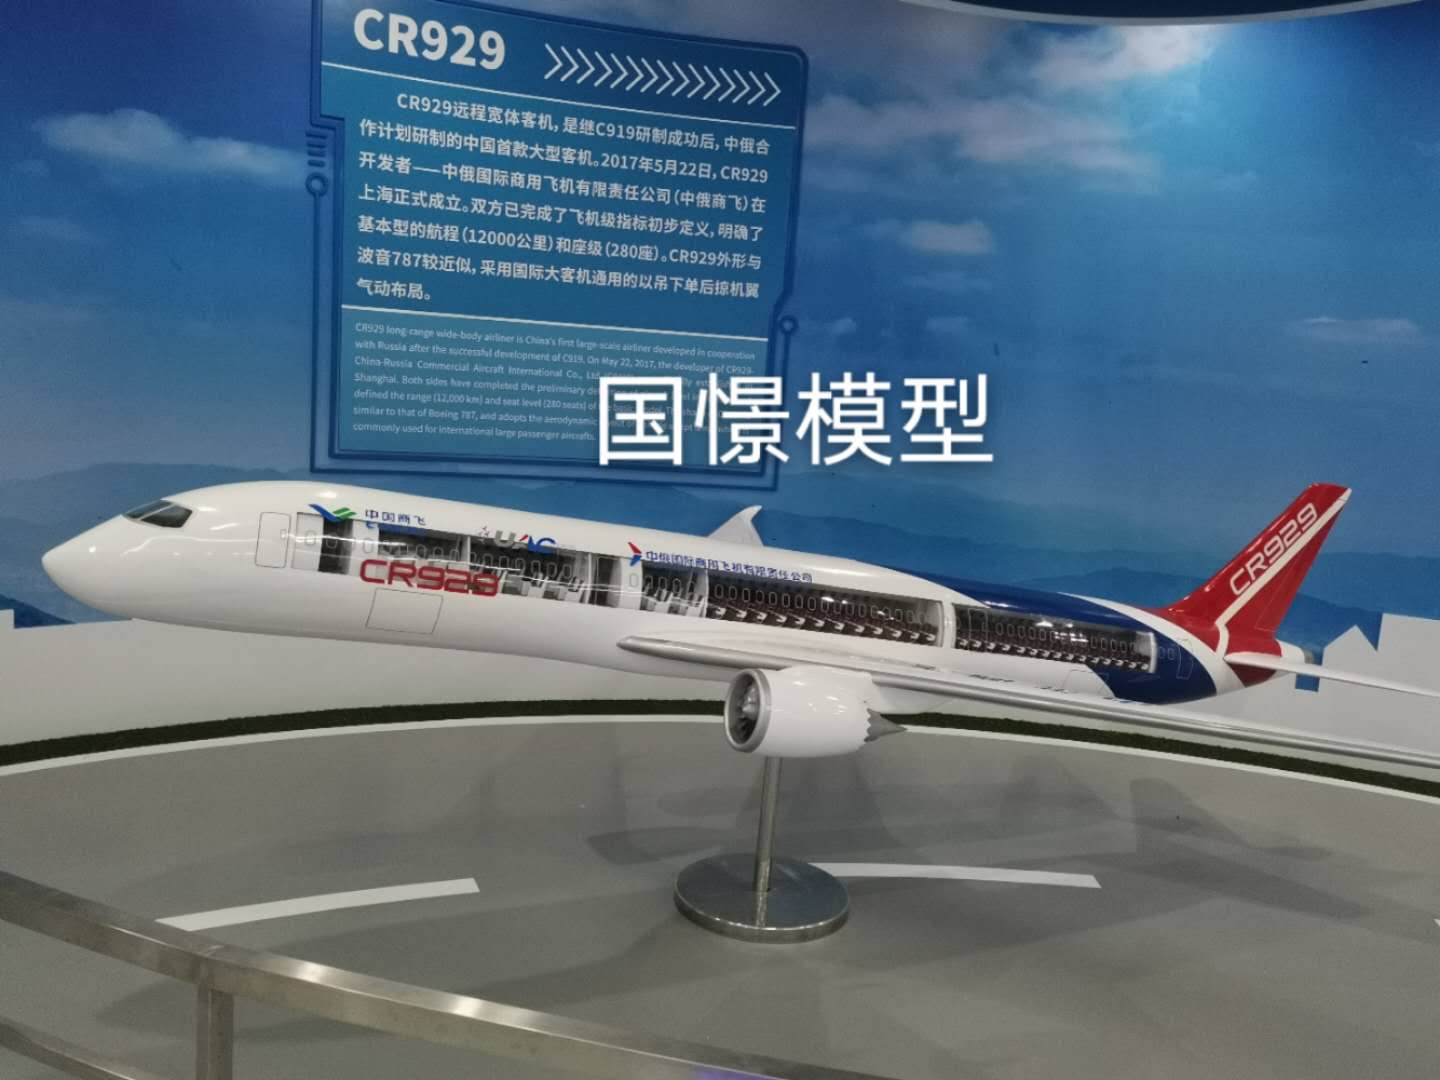 灵武县飞机模型